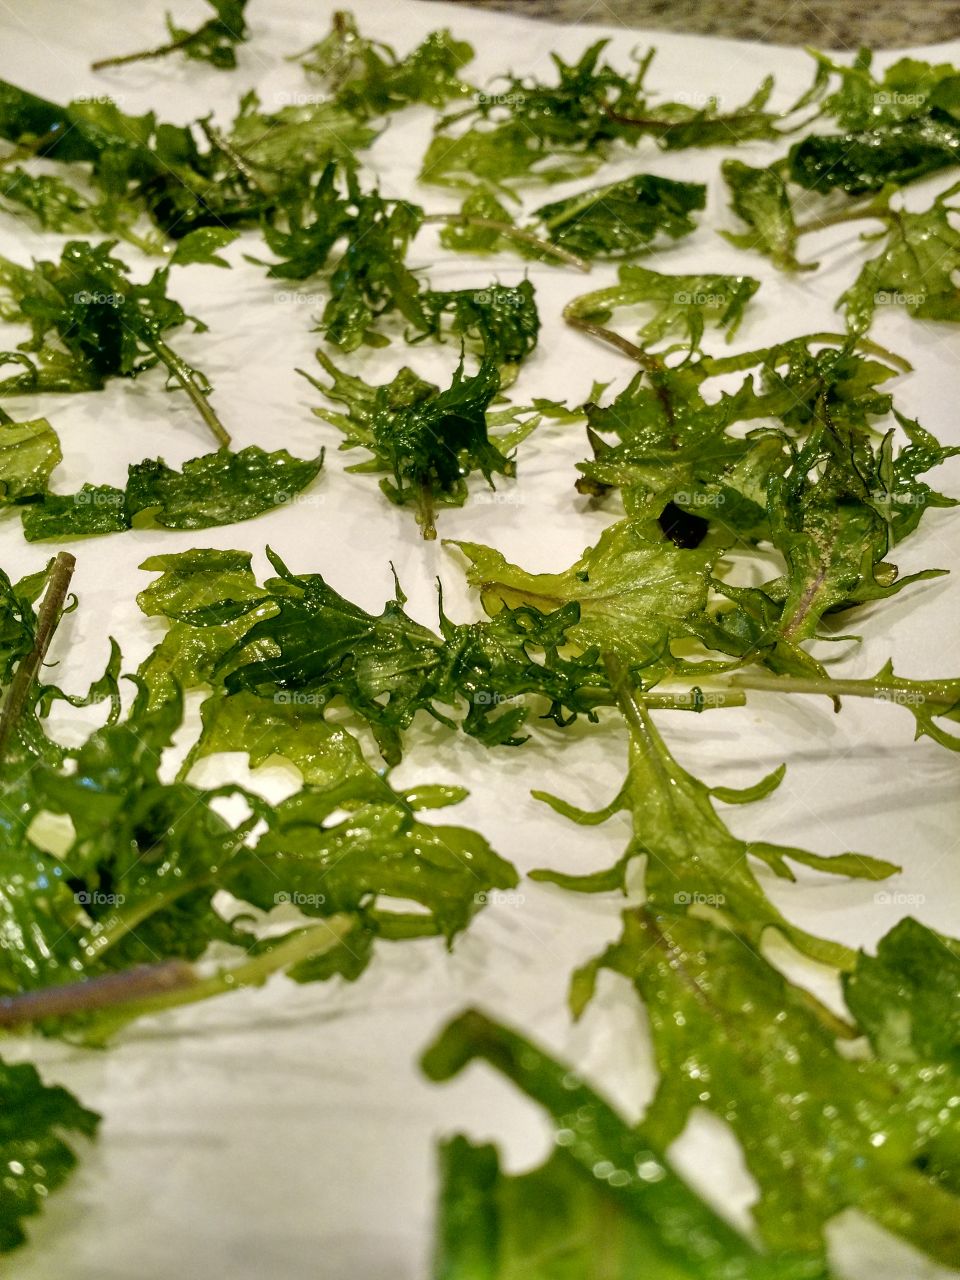 kale noms. making kale chips